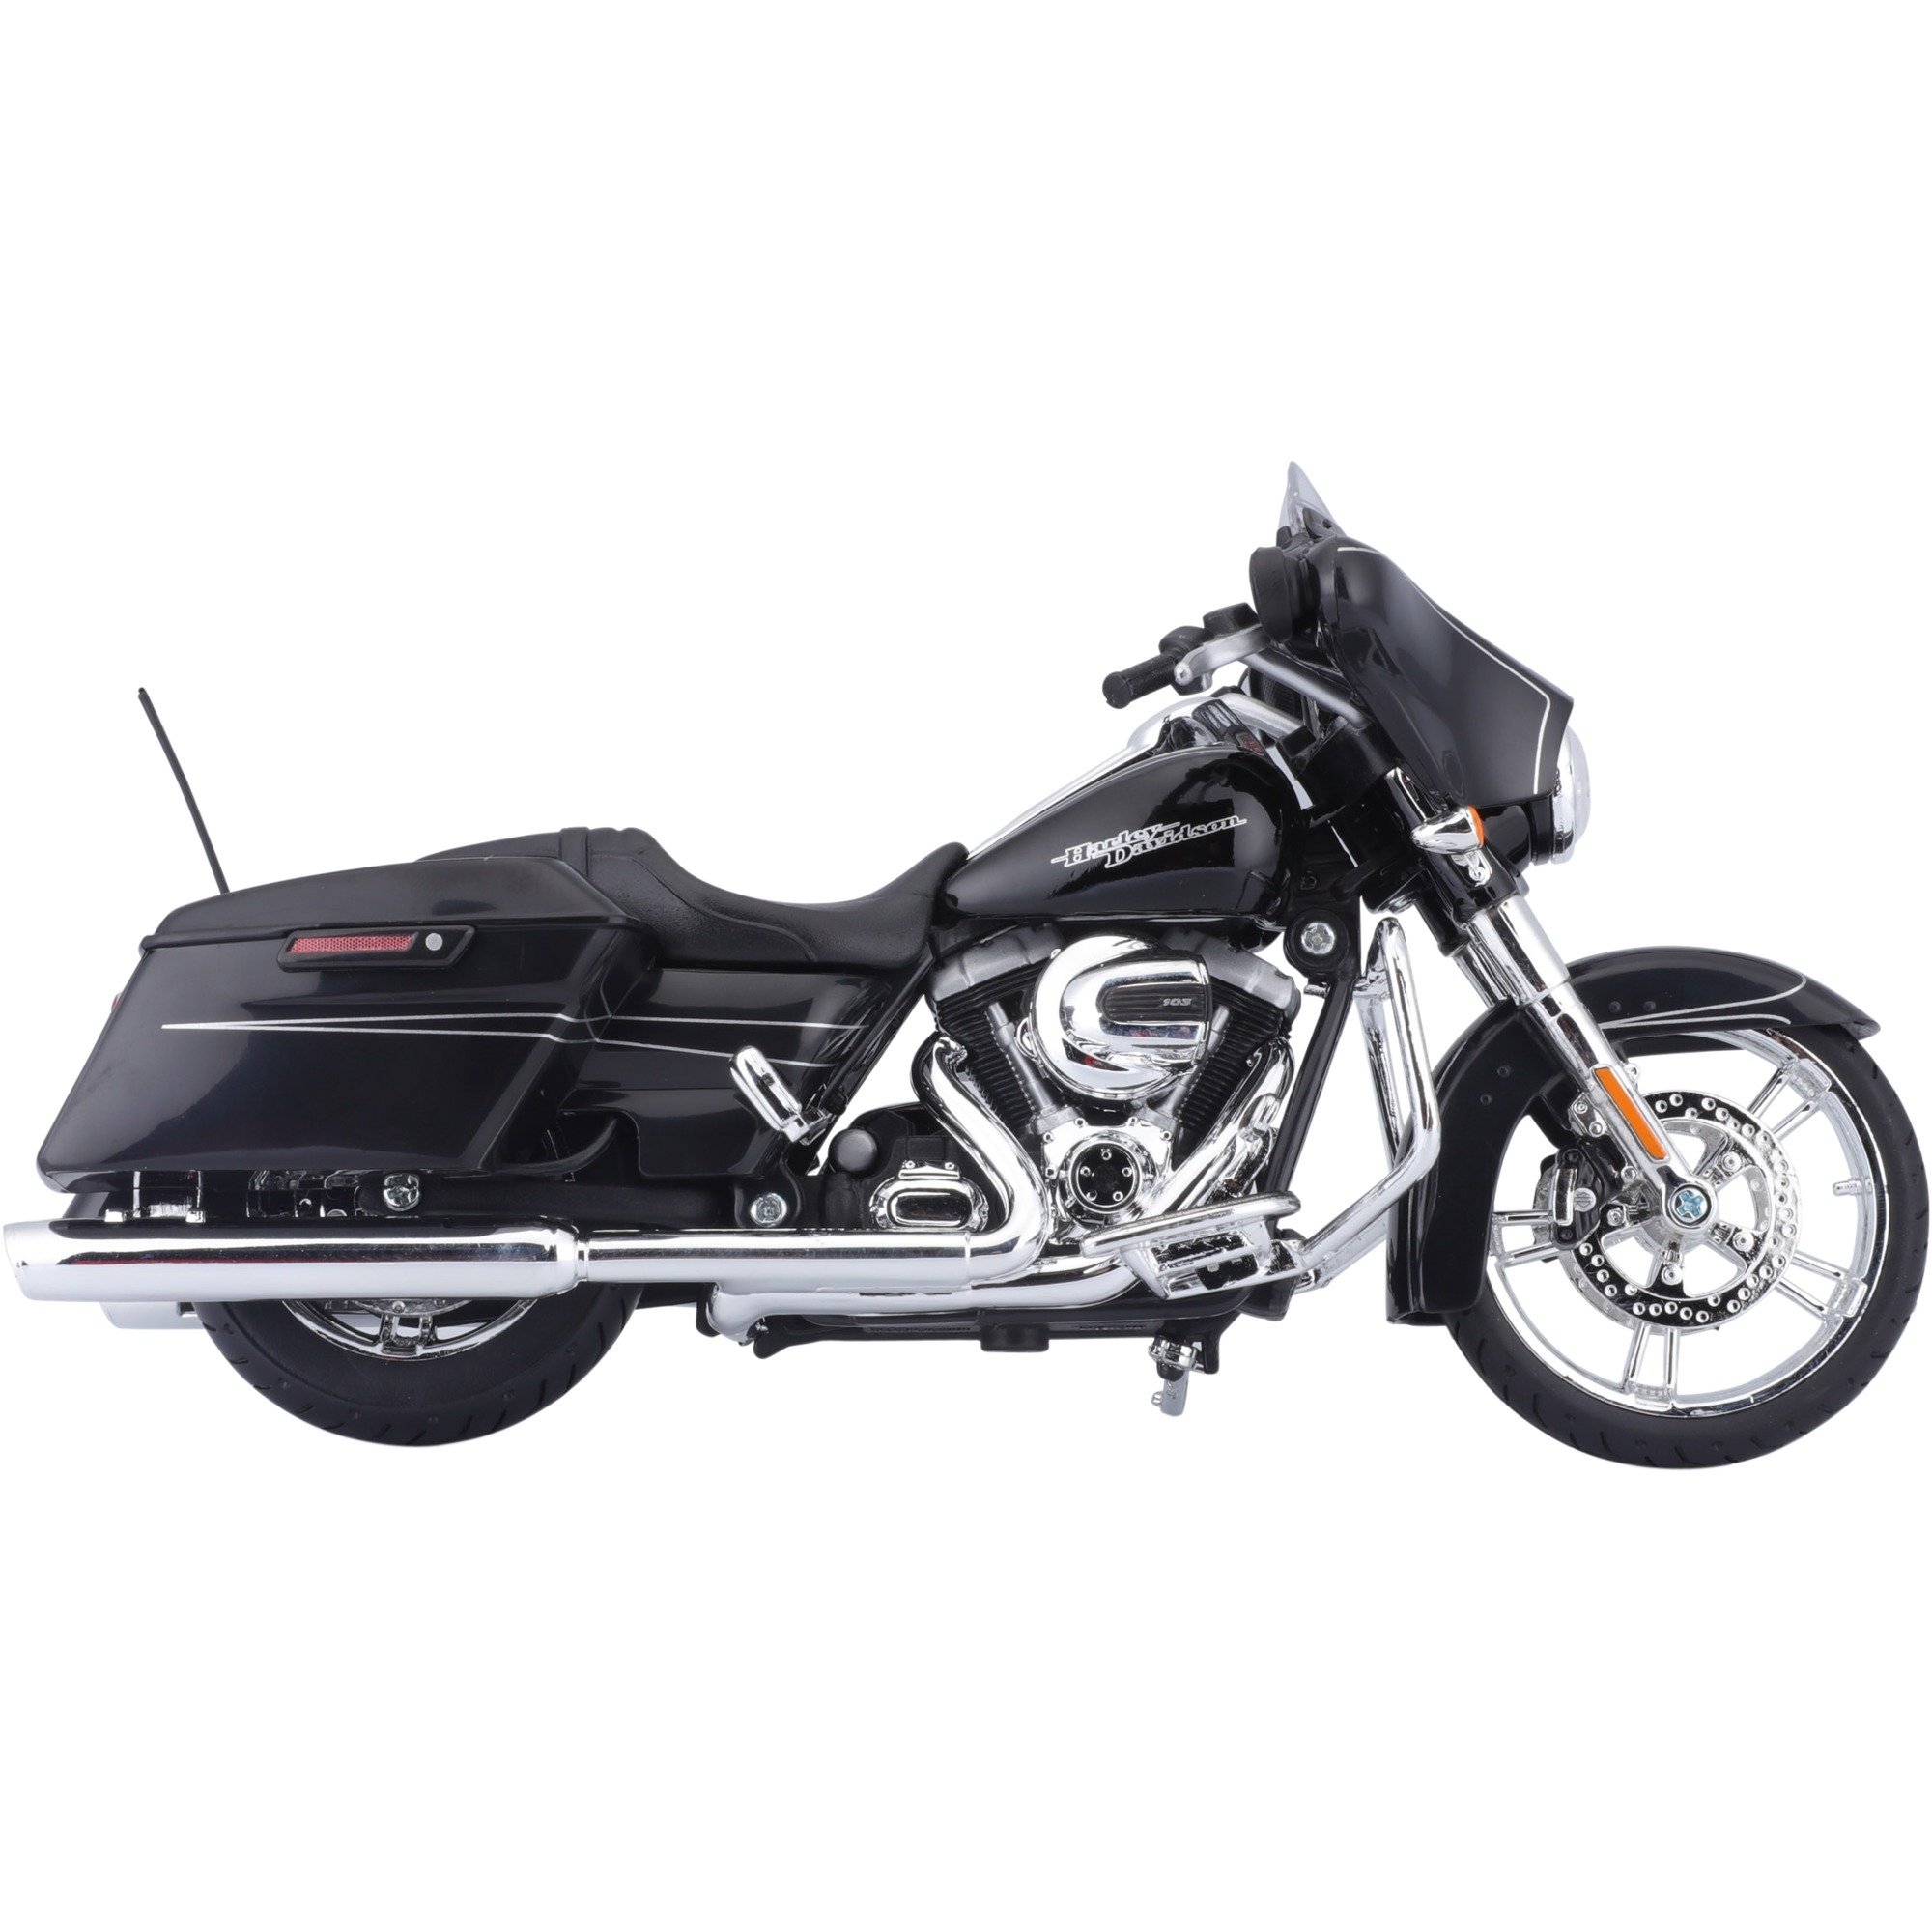 Image of Alternate - Harley-Davidson Street Glide Special ''15, Modellfahrzeug online einkaufen bei Alternate